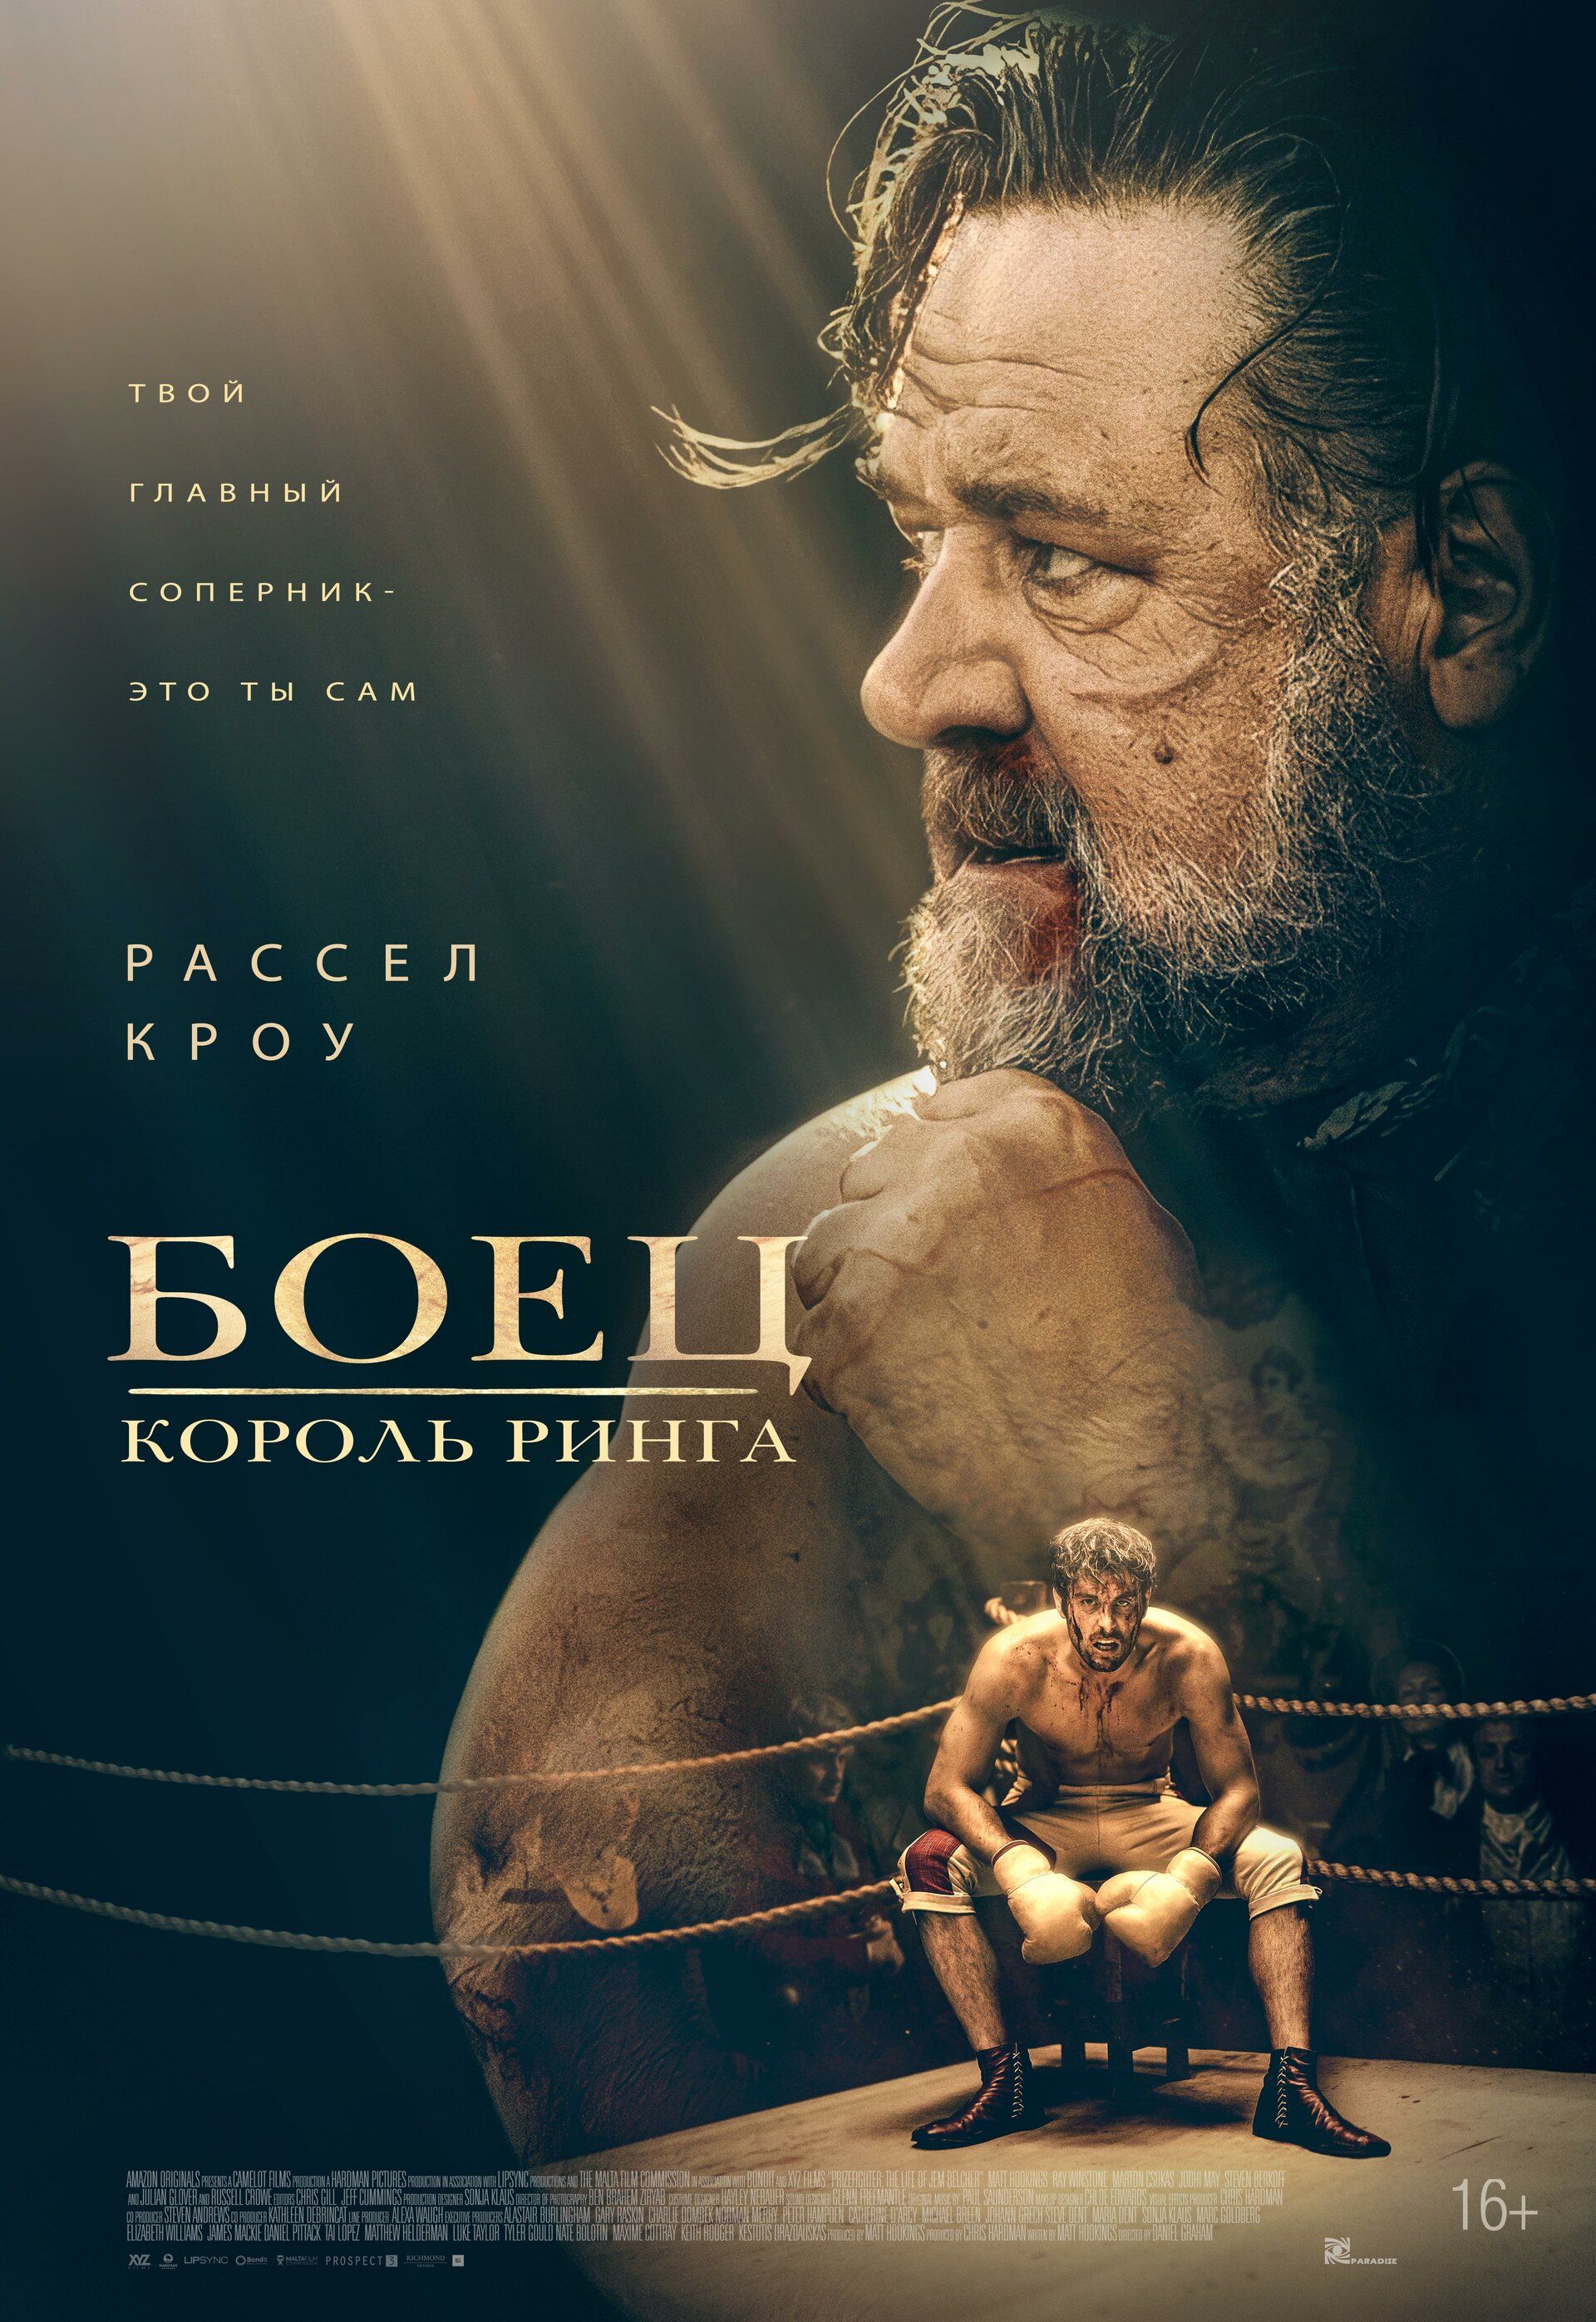 Постер к фильму Боец: Король ринга / Prizefighter: The Life of Jem Belcher (2022) BDRip 720p от селезень | D